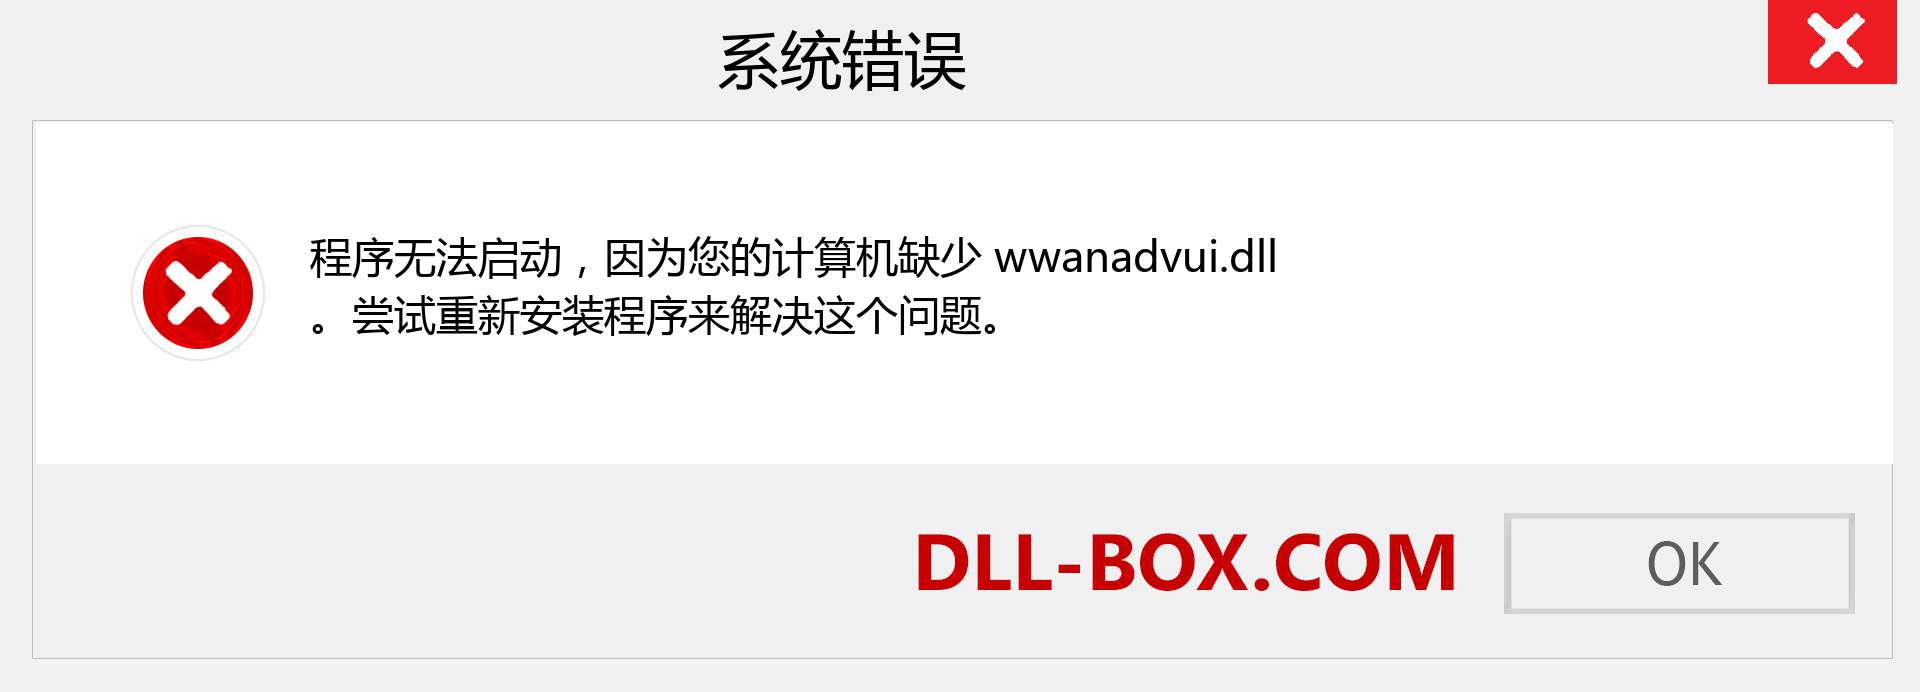 wwanadvui.dll 文件丢失？。 适用于 Windows 7、8、10 的下载 - 修复 Windows、照片、图像上的 wwanadvui dll 丢失错误